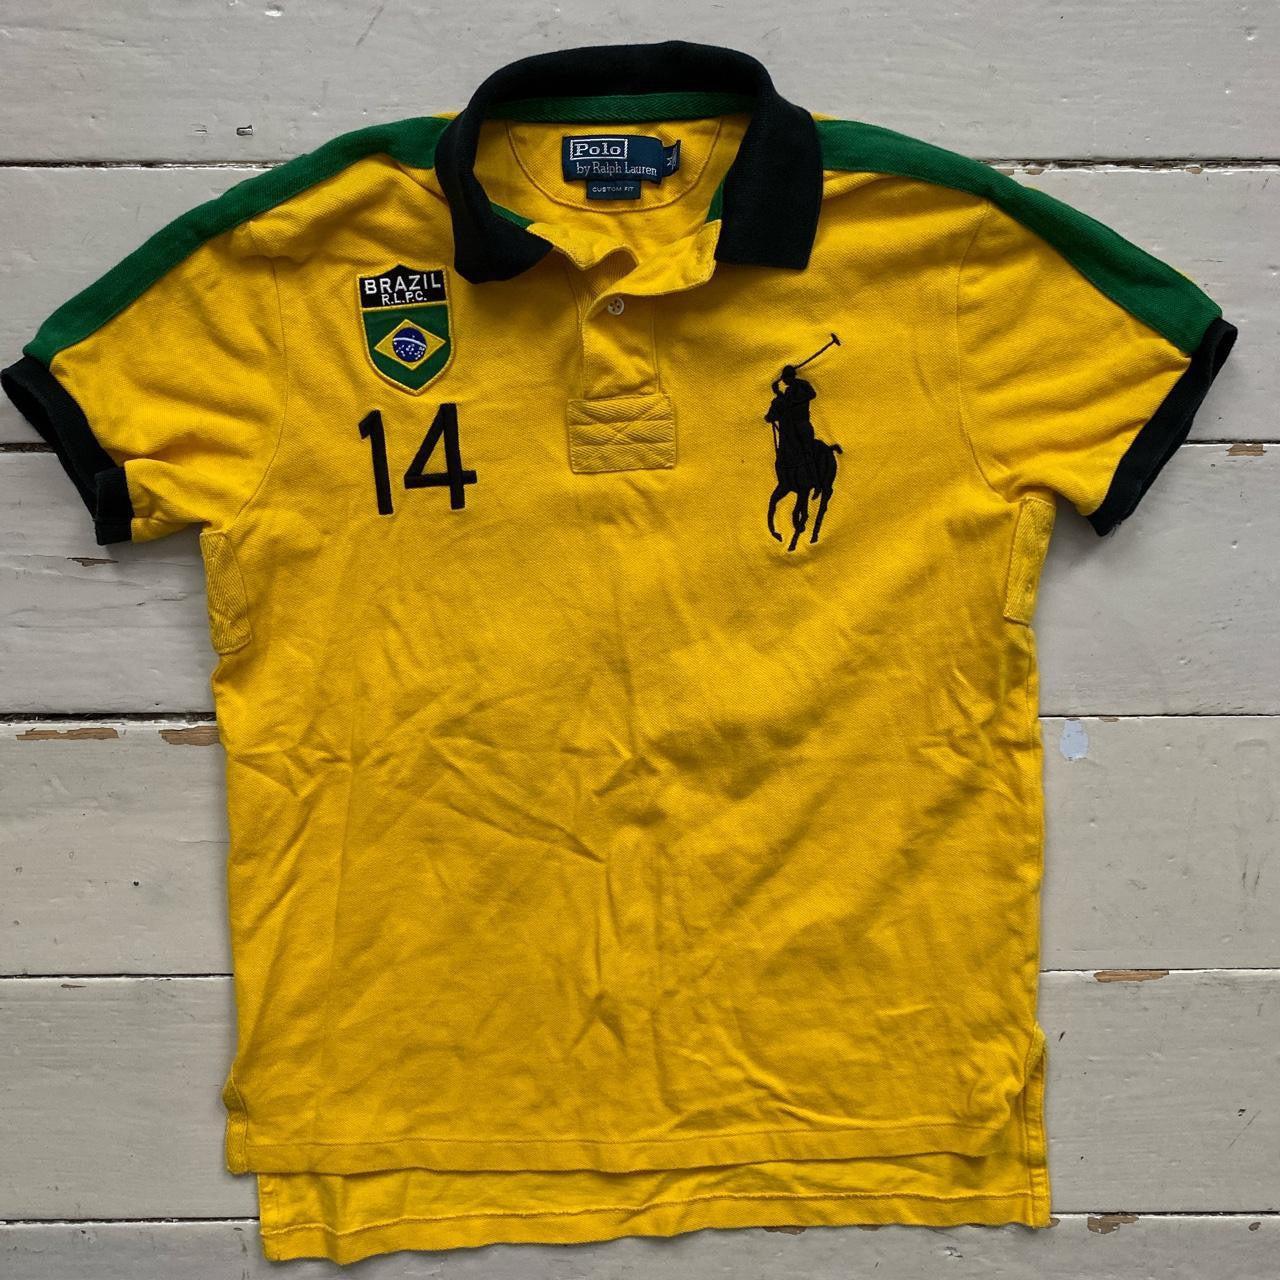 Ralph Lauren Polo Brazil Shirt (Medium)